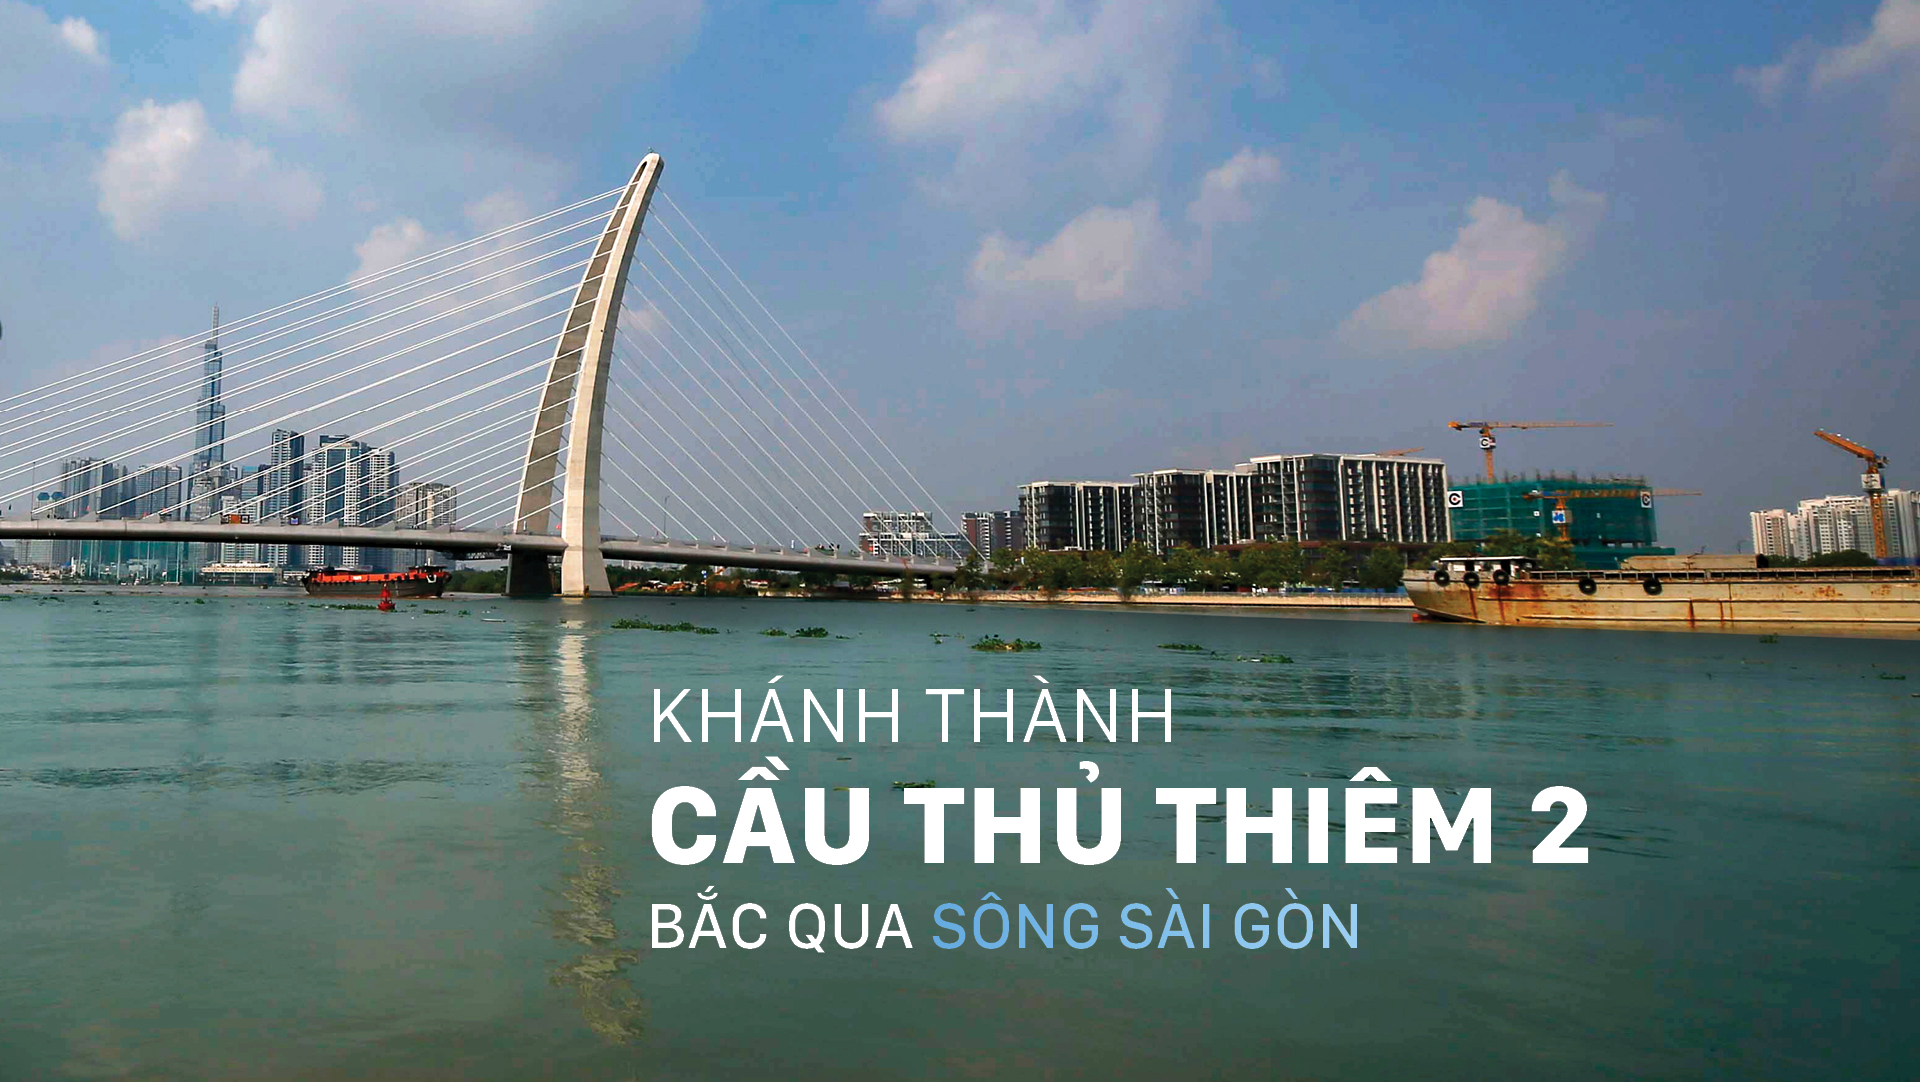 Khánh thành cầu Thủ Thiêm 2 bắc qua sông Sài Gòn